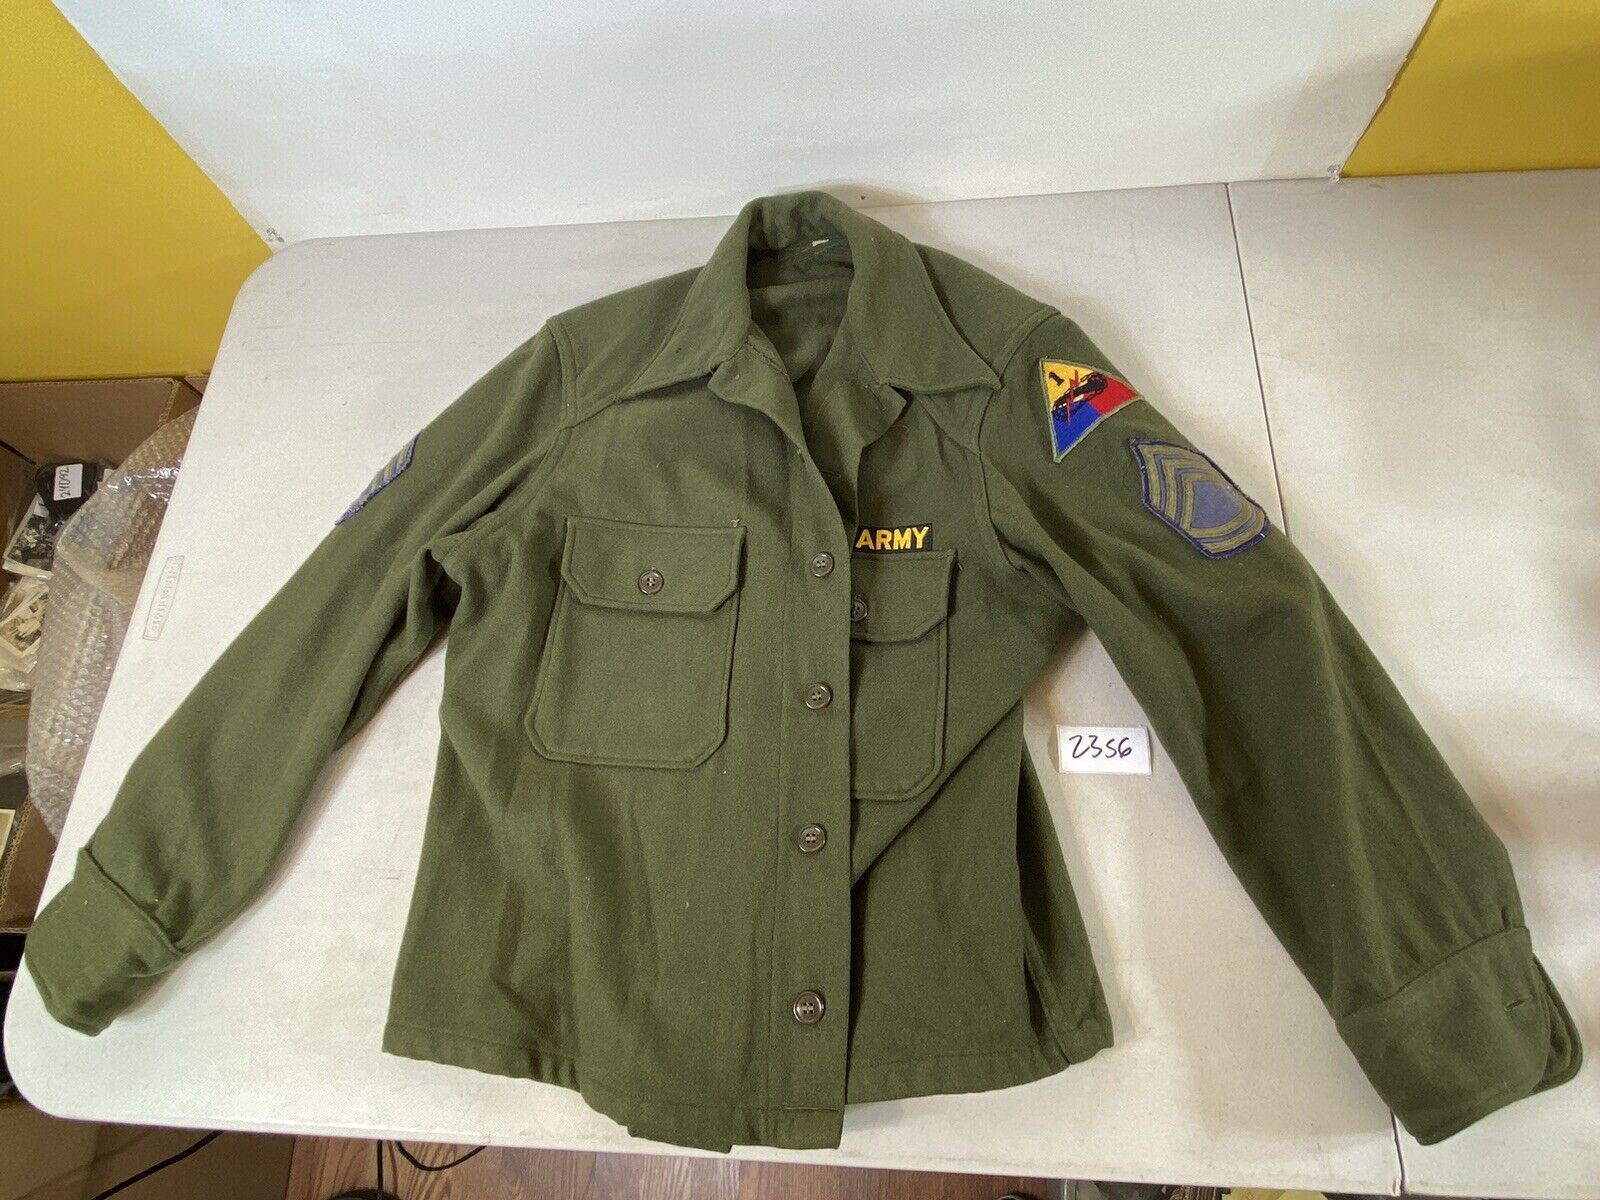 WW1 WW2 Jacket Coat Uniform US Army 23S6